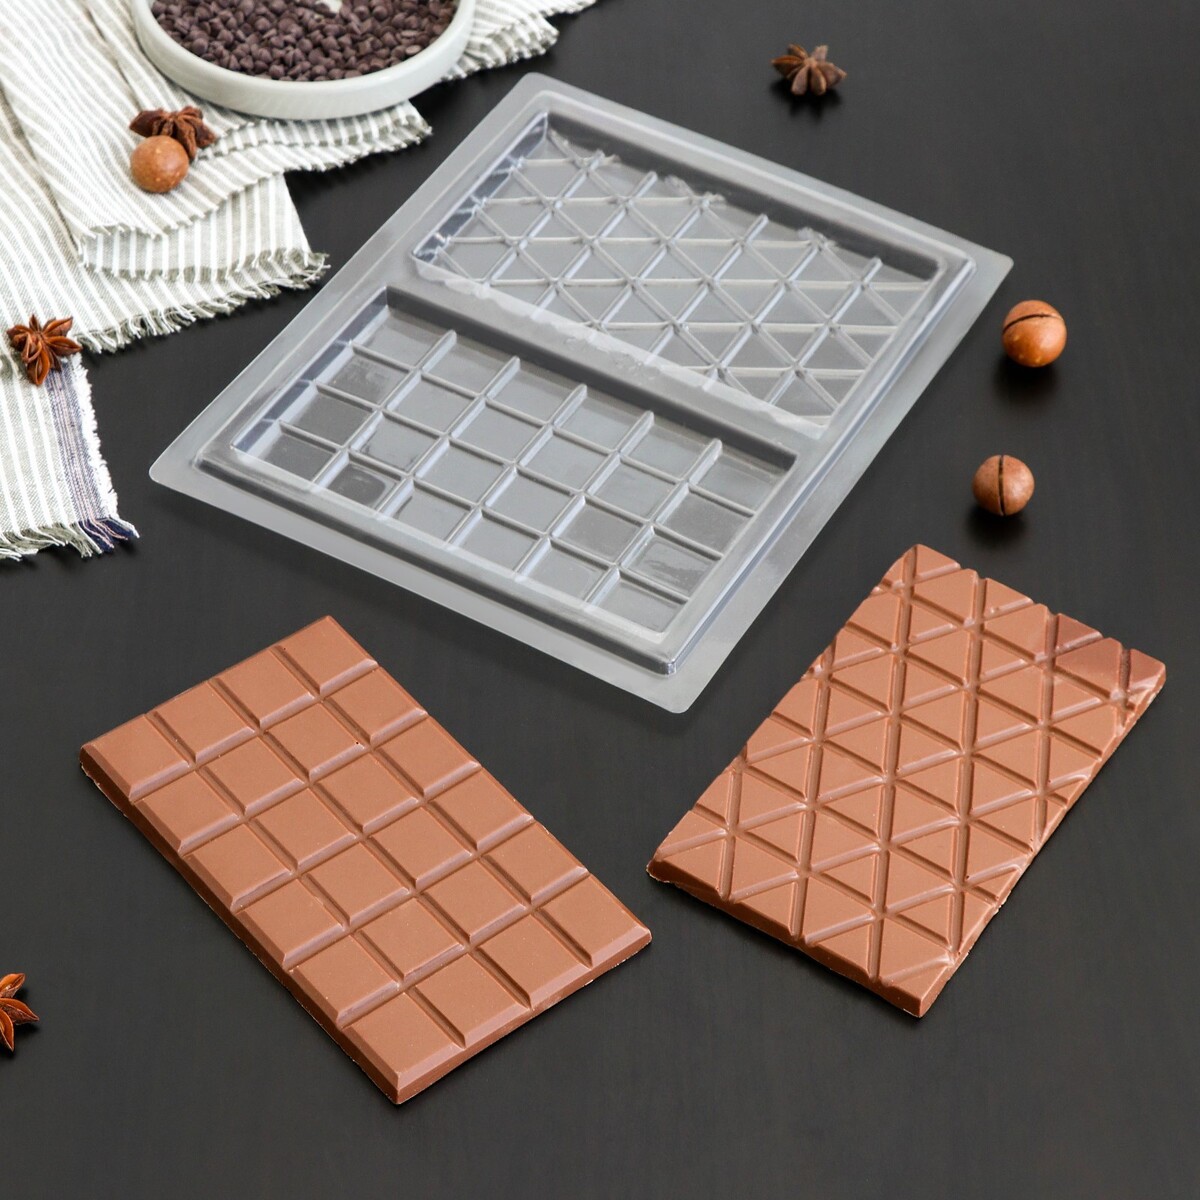 Шоколадные формы купить. Плитка шоколада. Форма для шоколада. Формы для шоколадных плиток. Пластиковые формы для шоколада.